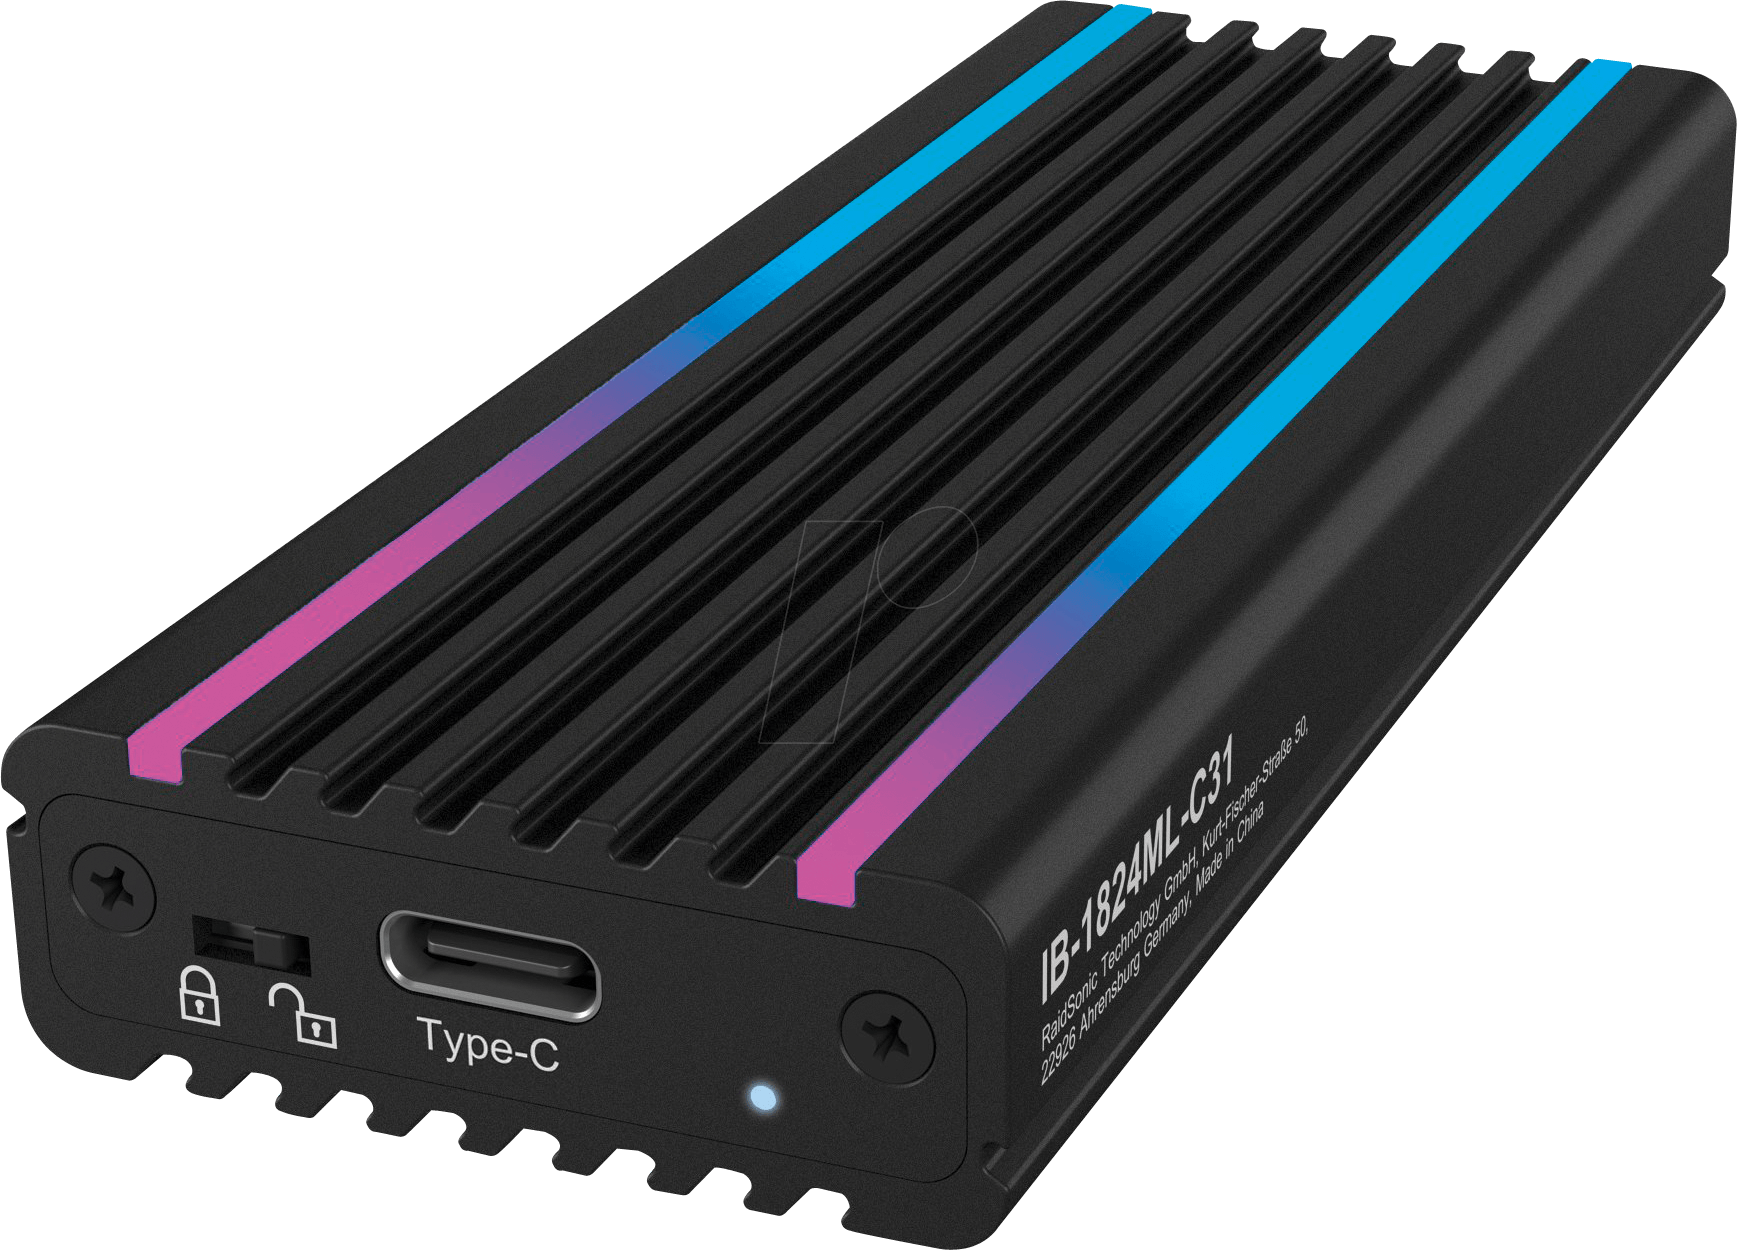 ICY IB-1824MLC31 - Externes M.2 NVMe SSD Gehäuse, USB 3.1 Typ-C - RGB von Icybox